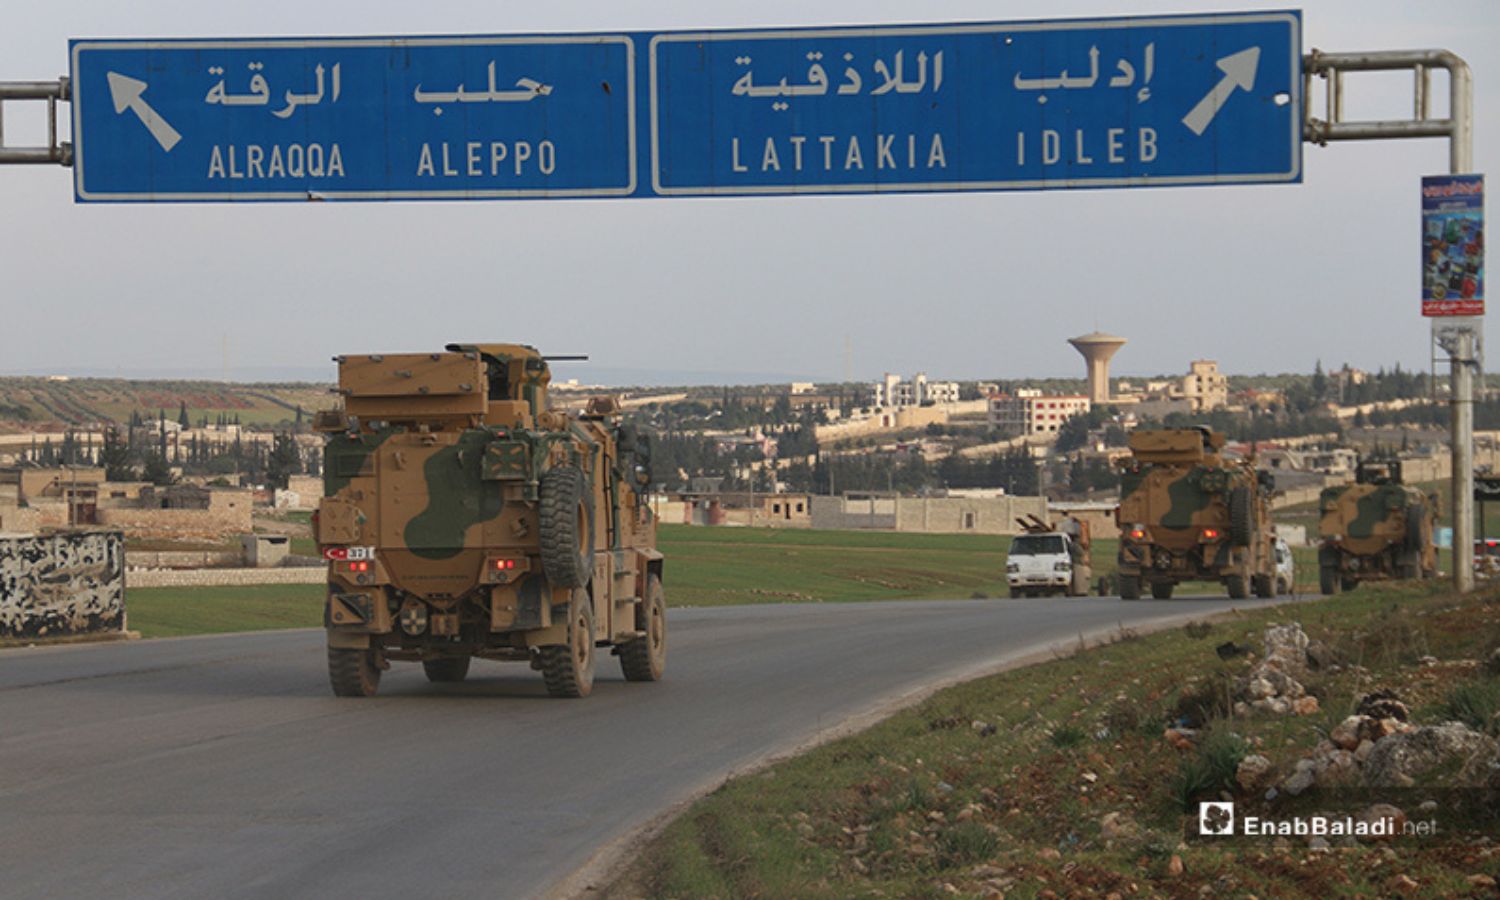 رتل تركي المكون من 25 آلية وهو يدخل الأراضي السورية في مدينة الأتارب بريف حلب الغربي- 3 من شباط 2020 (عنب بلدي)